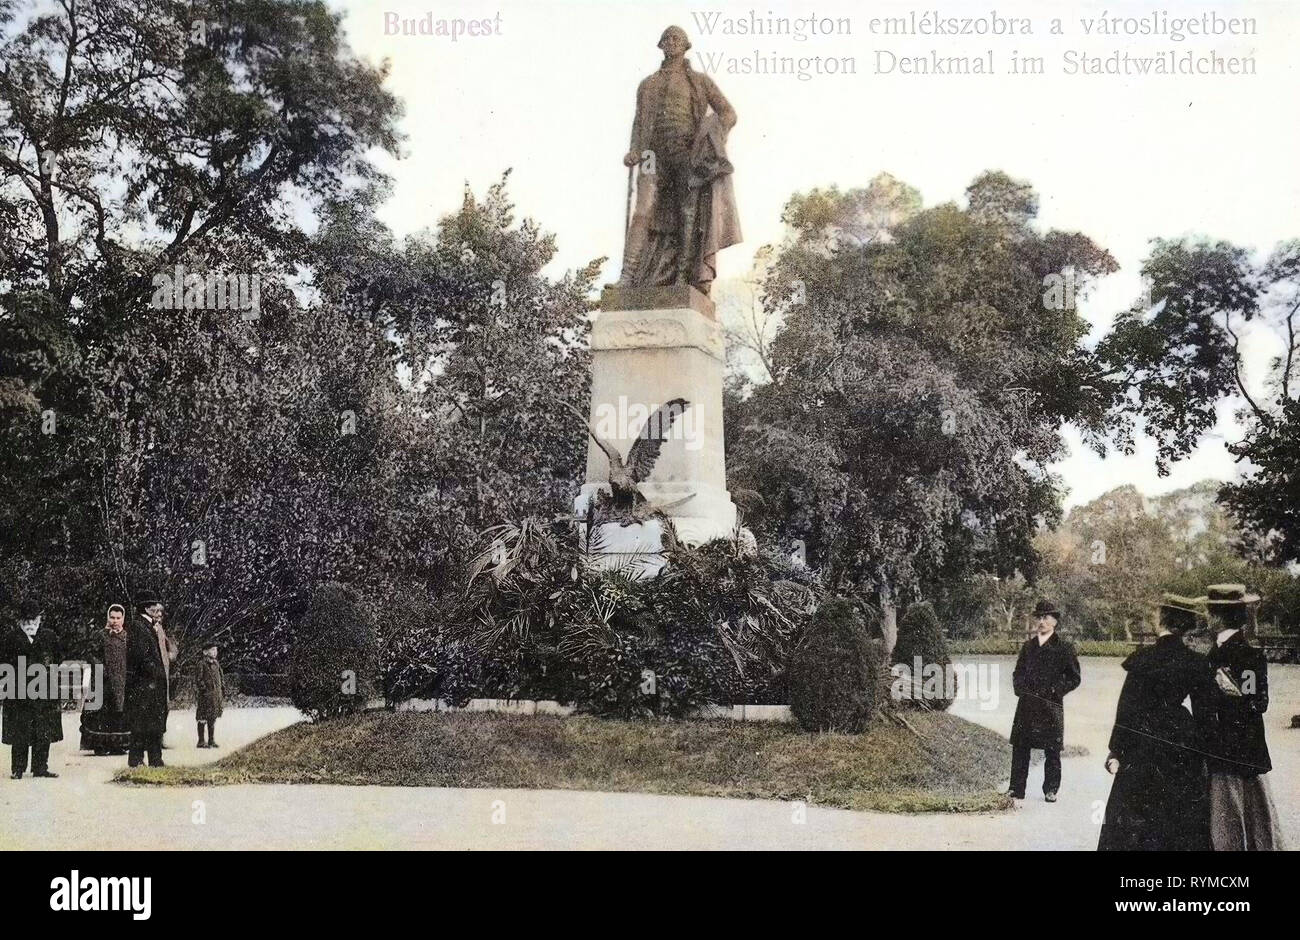 Statue de George Washington par Gyula Bezerédi, 1906, Budapest, Washington, Denkmal im Stadtwäldchen, Hongrie Banque D'Images